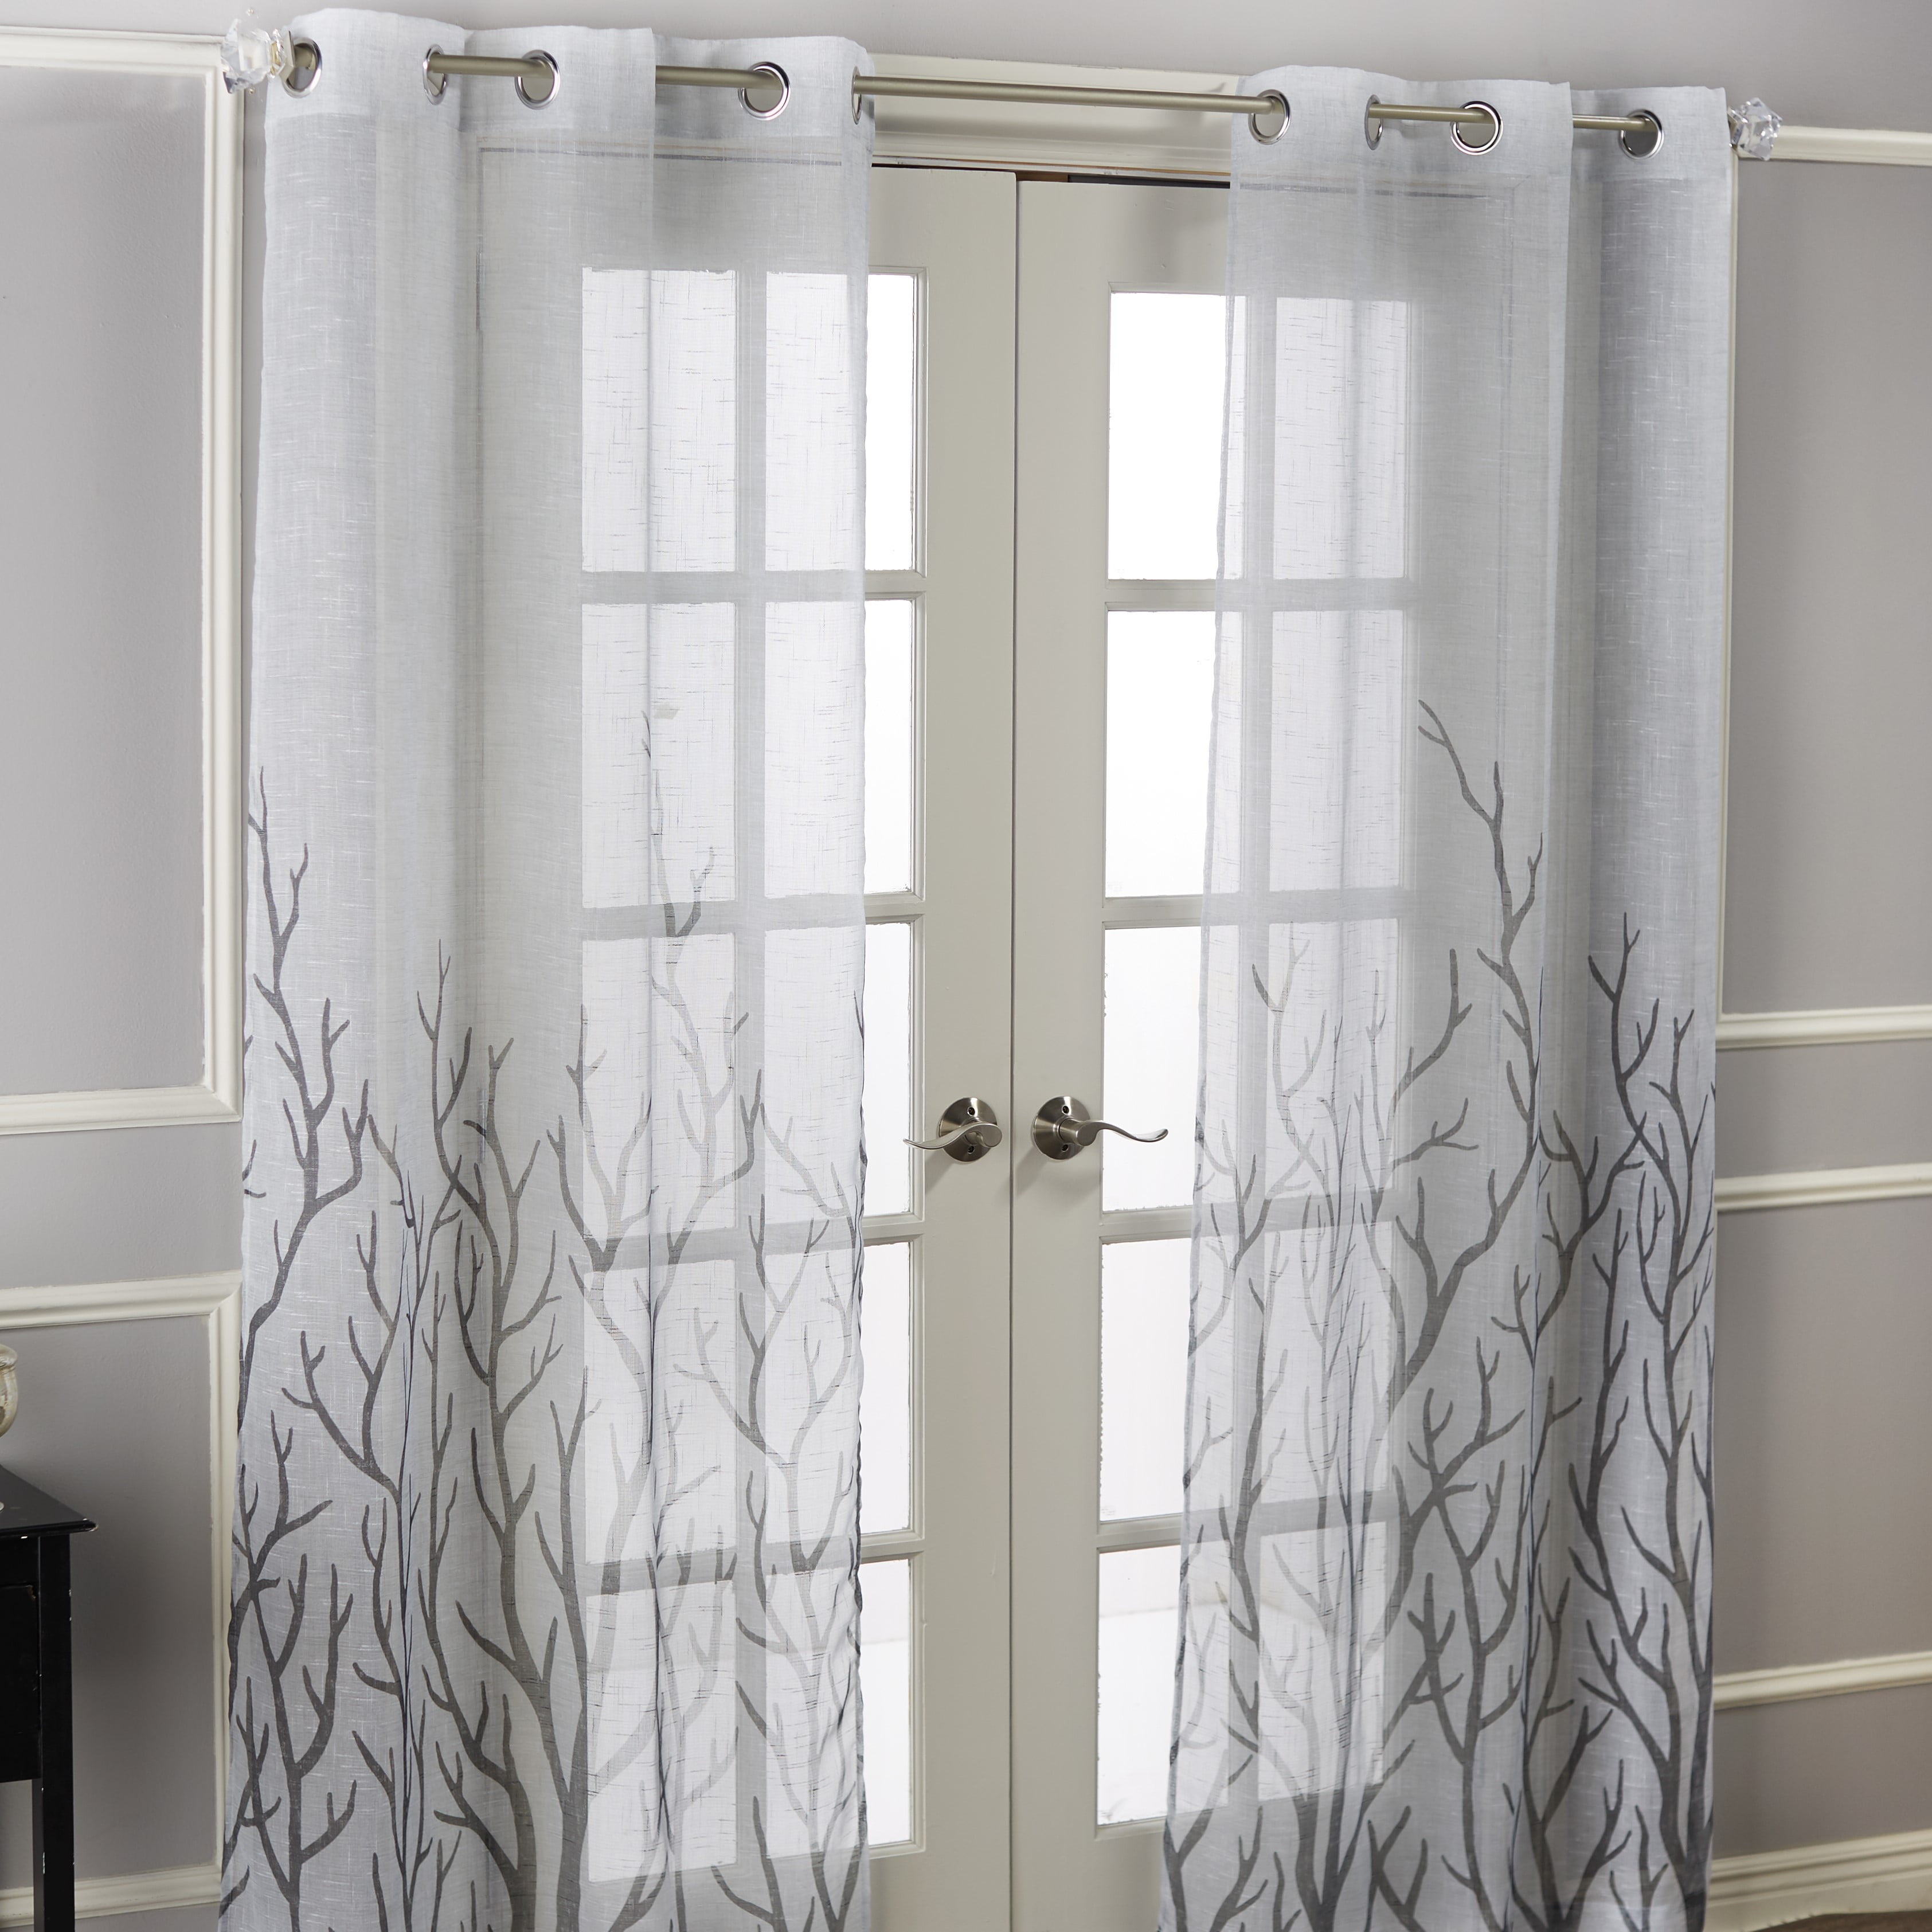 A Pair Sheer Curtain Voile Window Curtains metal eyelet black custom width drop 